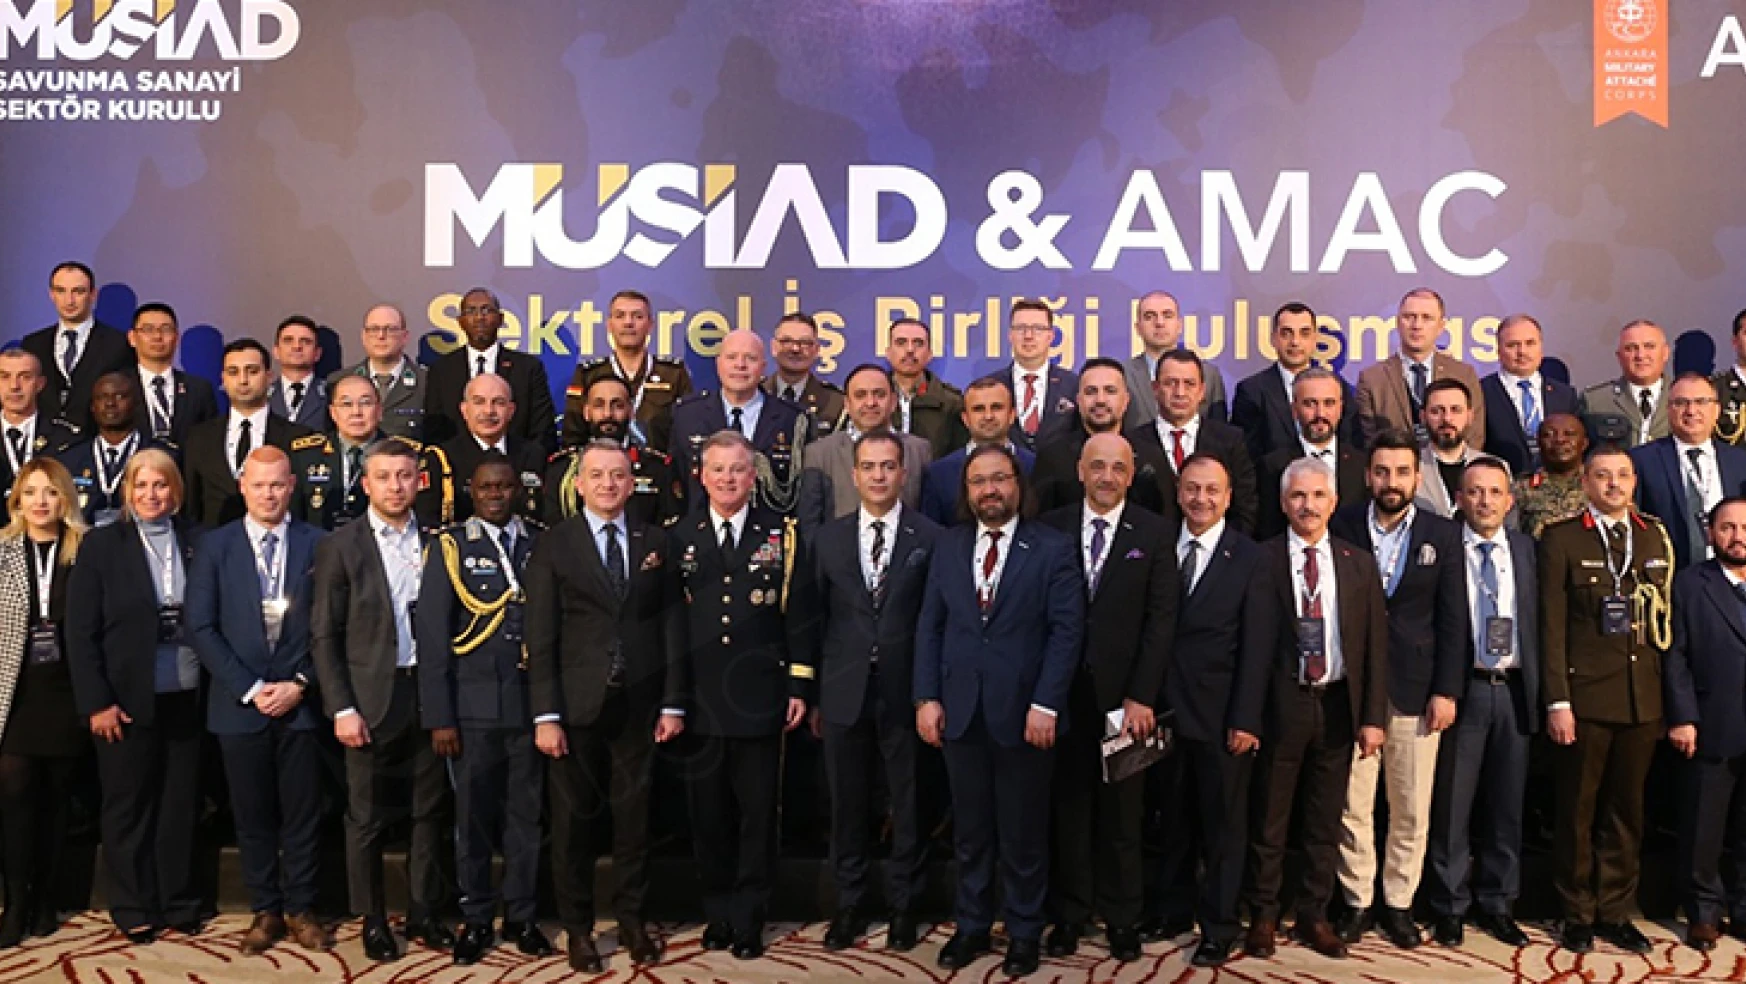 MÜSİAD-AMAC sektörel iş birliği buluşması